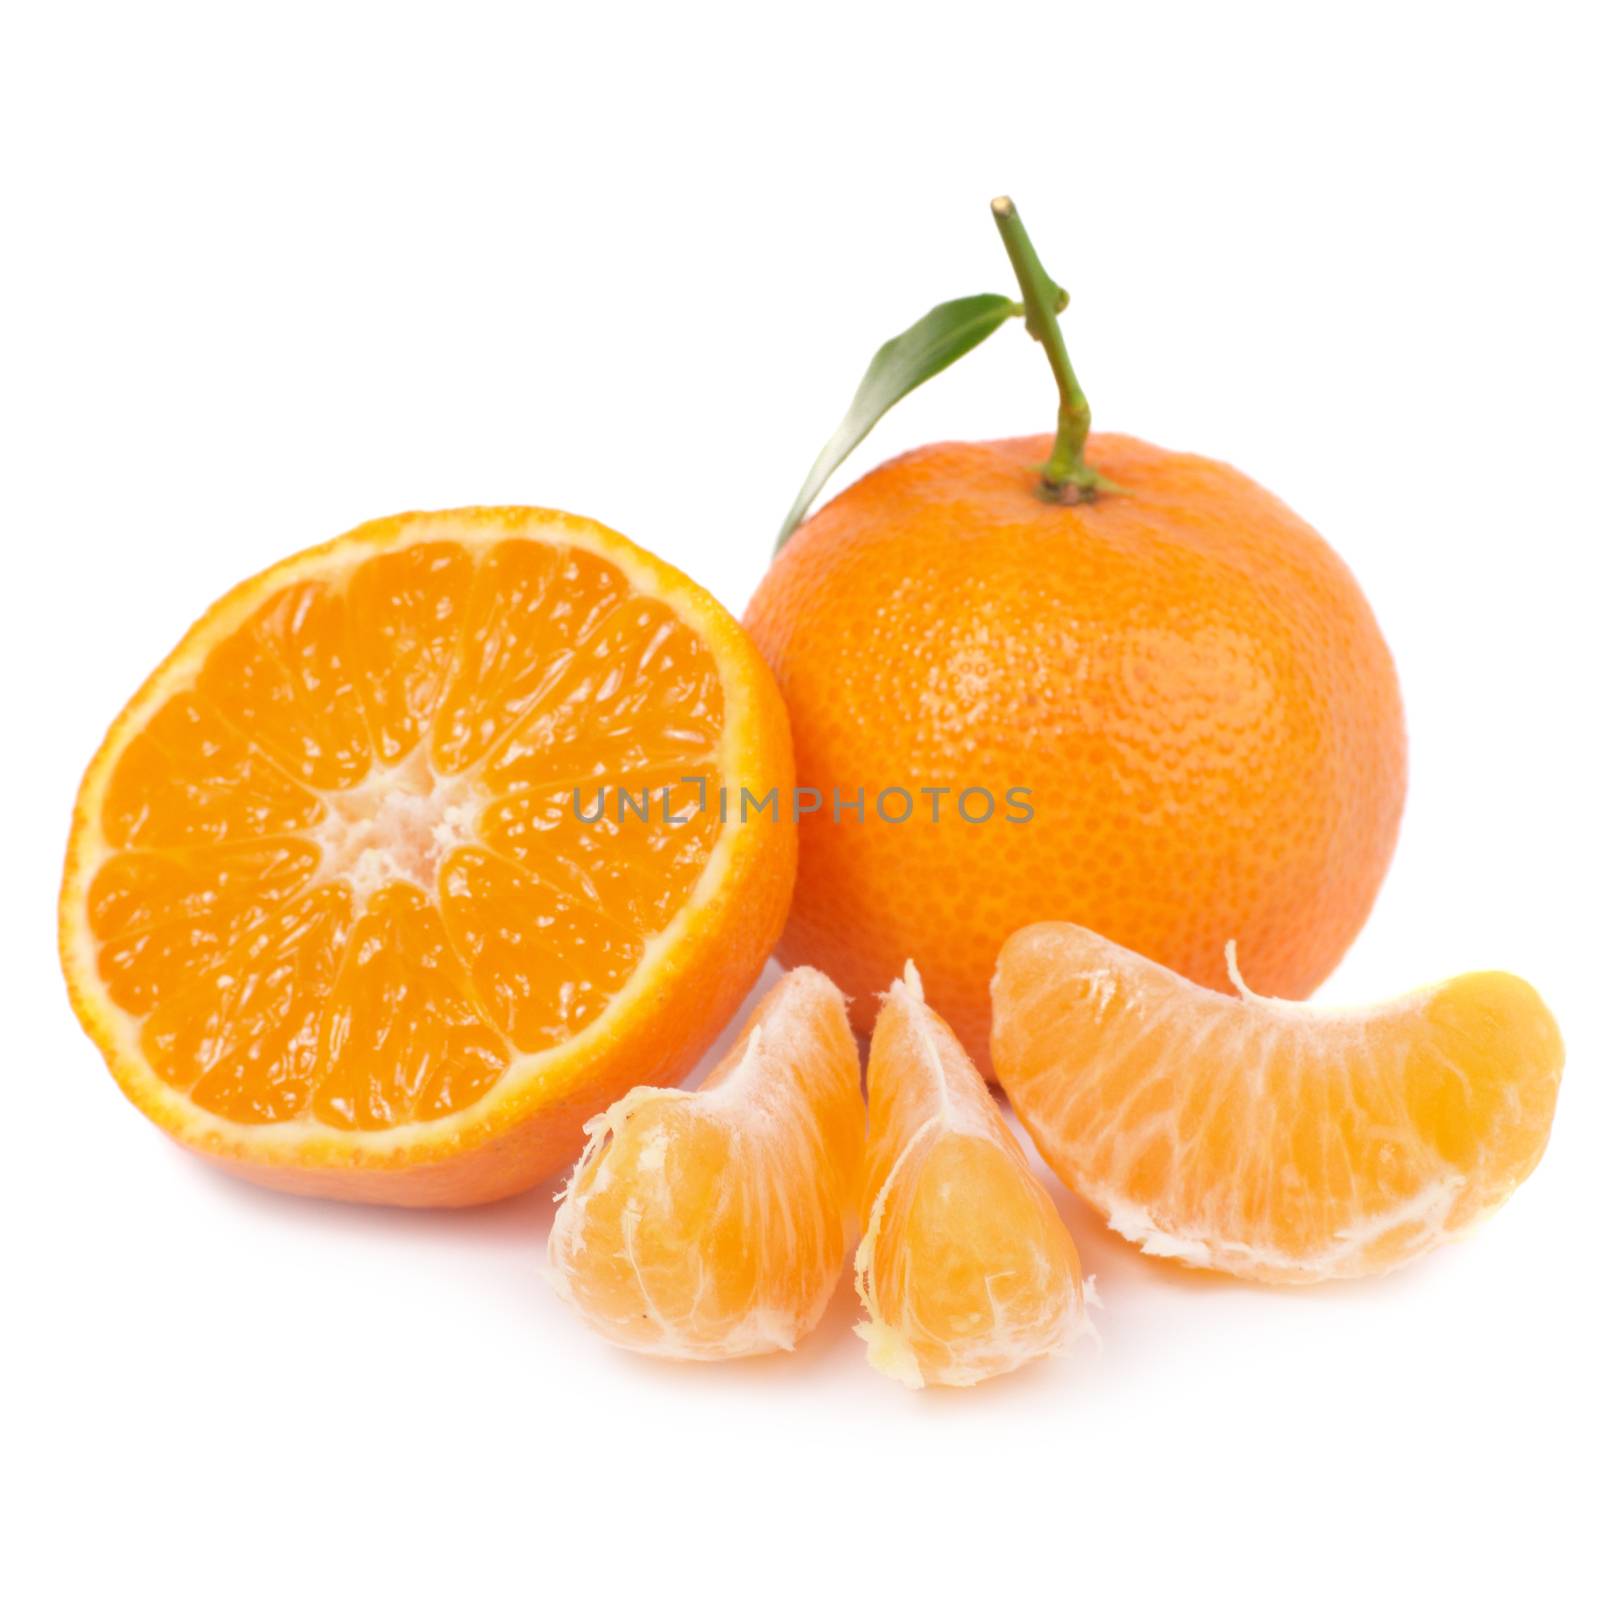 Orange mandarins by vapi